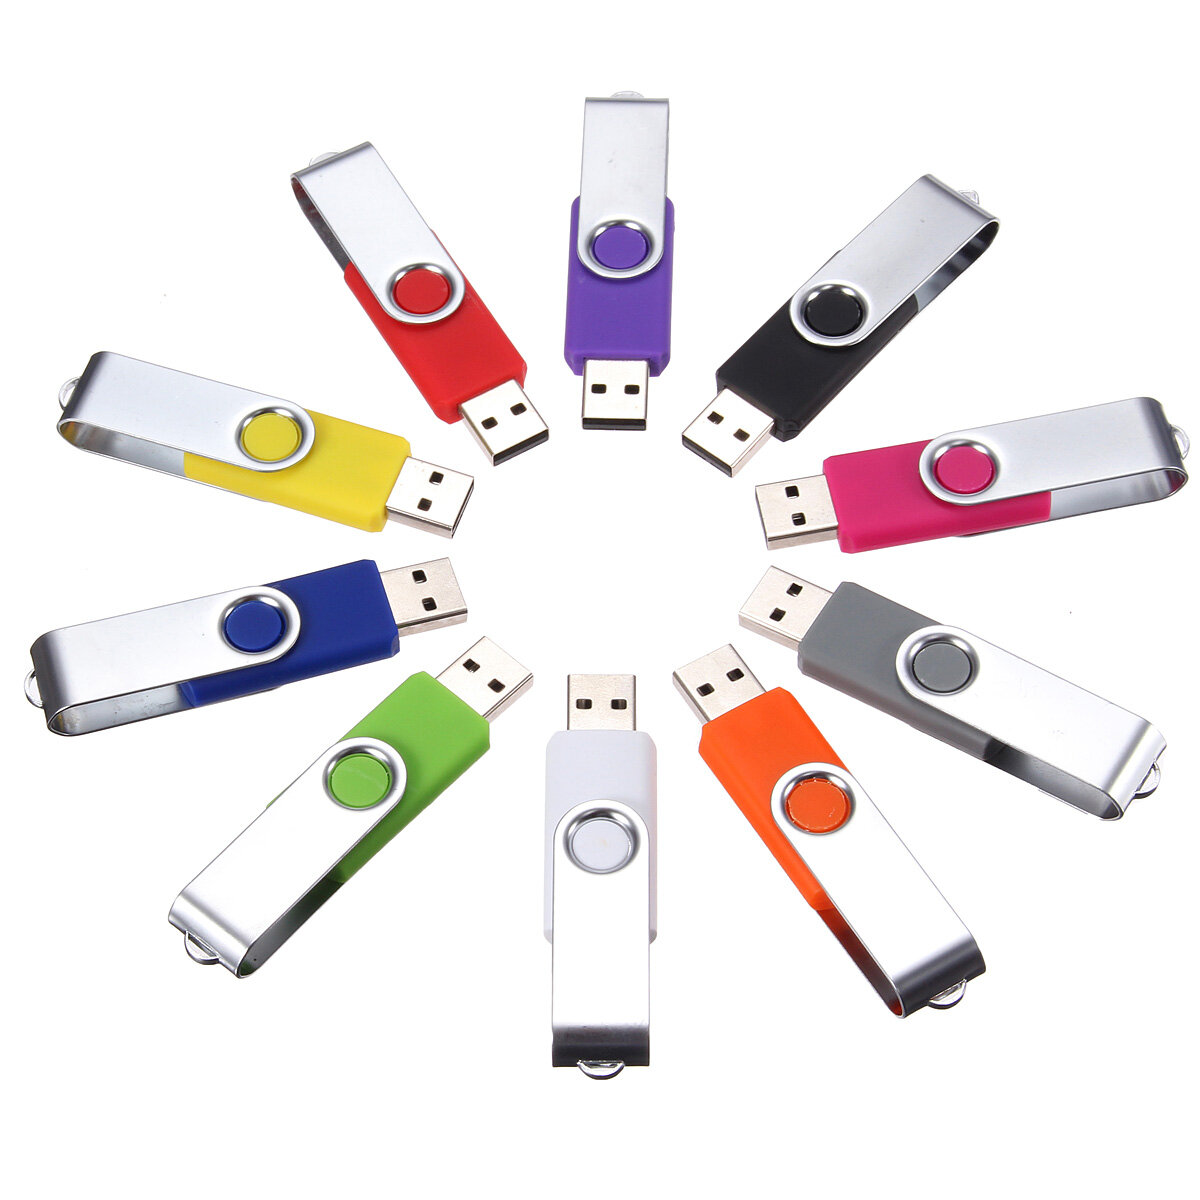 

32GB USB2.0 Flash Drive Colorful USB Memory Disk Пластиковый флеш-накопитель с вращением на 360° Pendrive